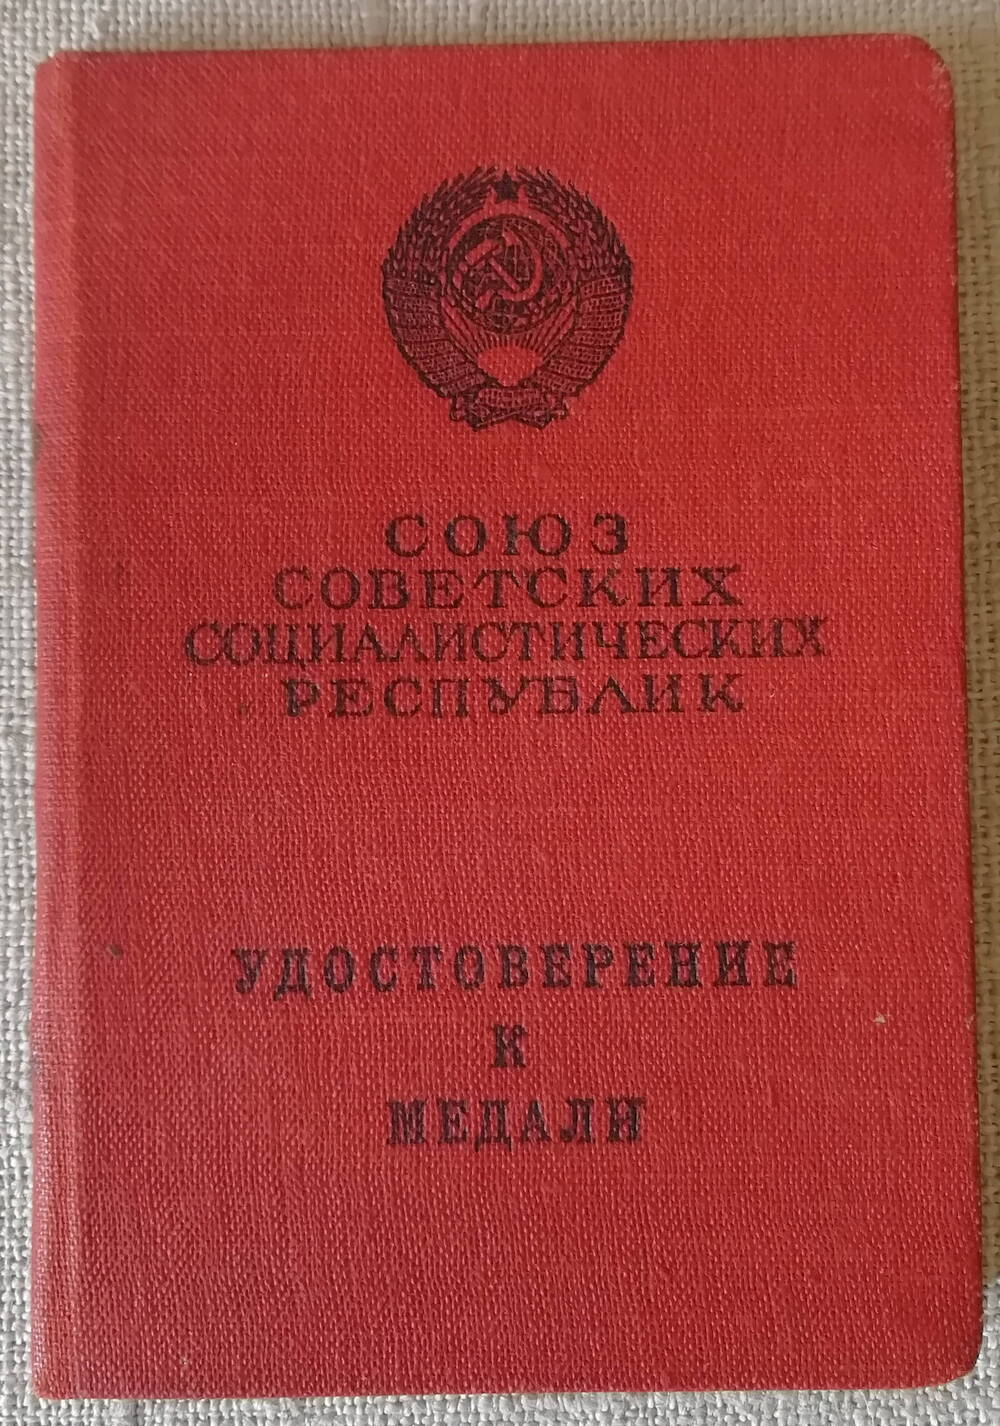 Удостоверение к медали «За трудовую доблесть» Д №658272 Которовой Анны Александровны 23 декабря 1953 год.